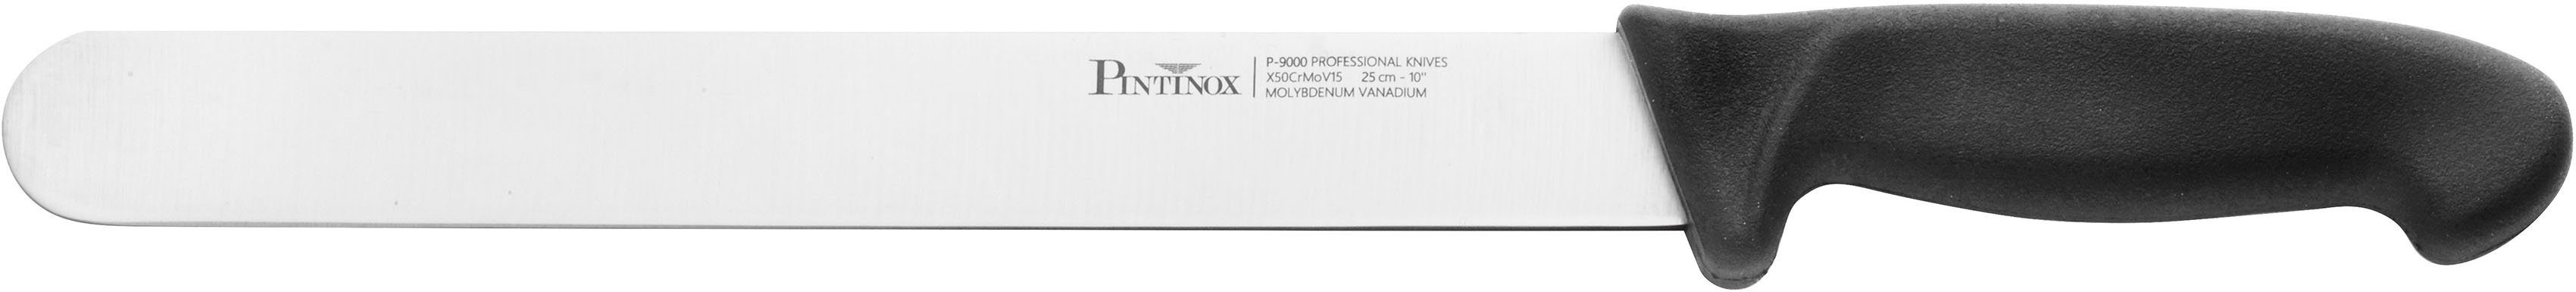 PINTINOX Schinkenmesser Coltelli P9000, Edelstahl/Kunststoff, spülmaschinengeeignet